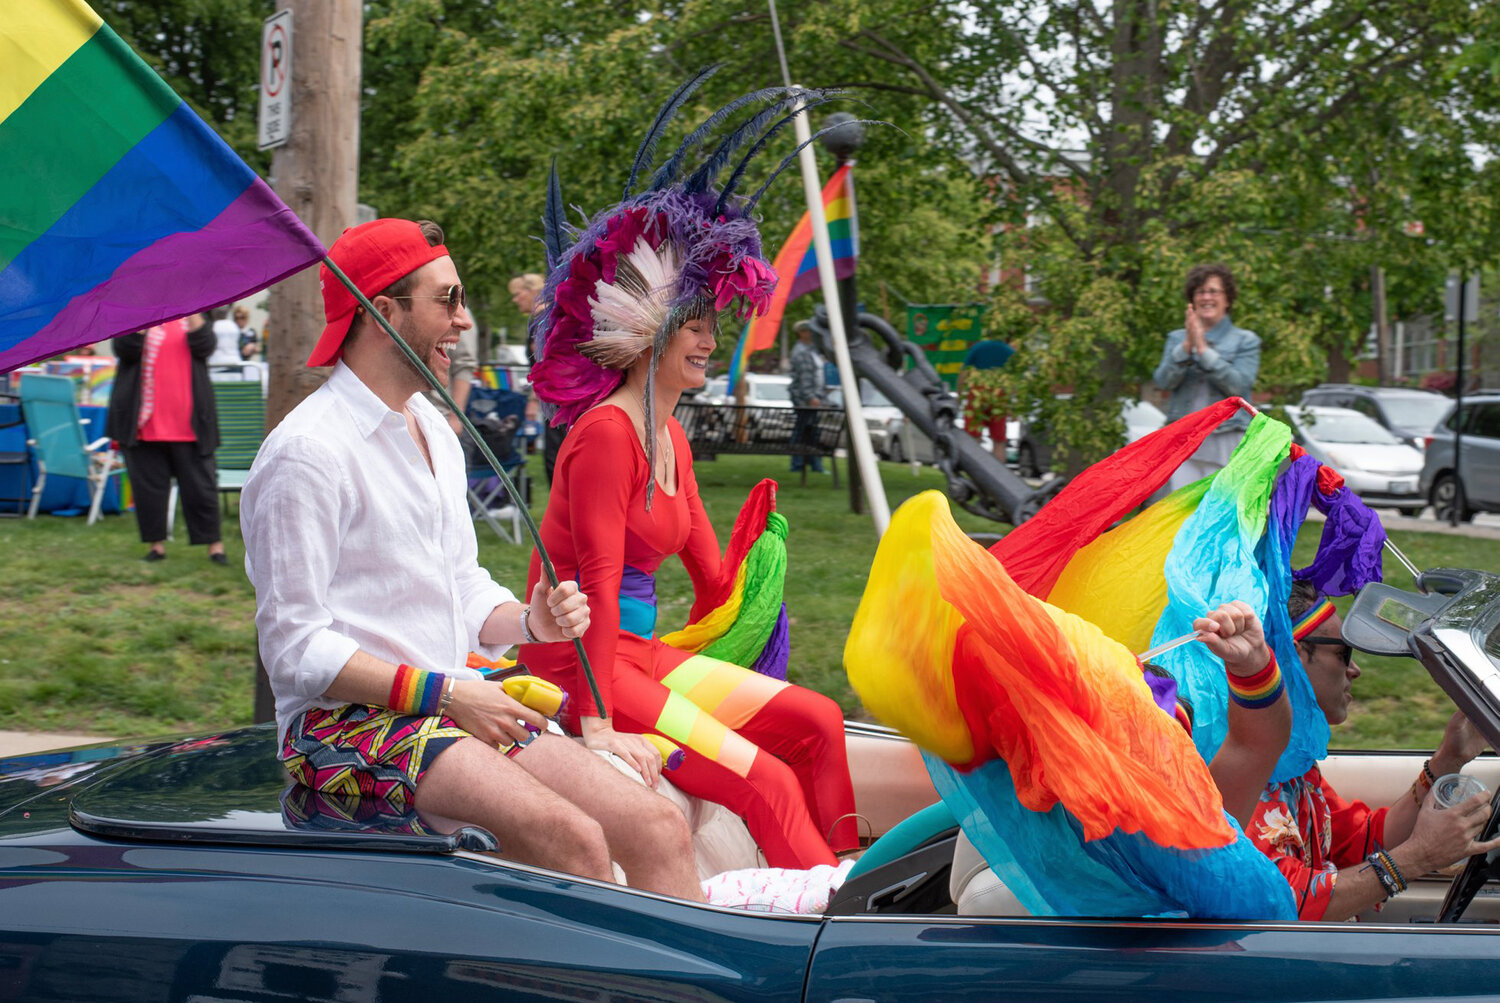 Scenes from a past Newport Pride Festival